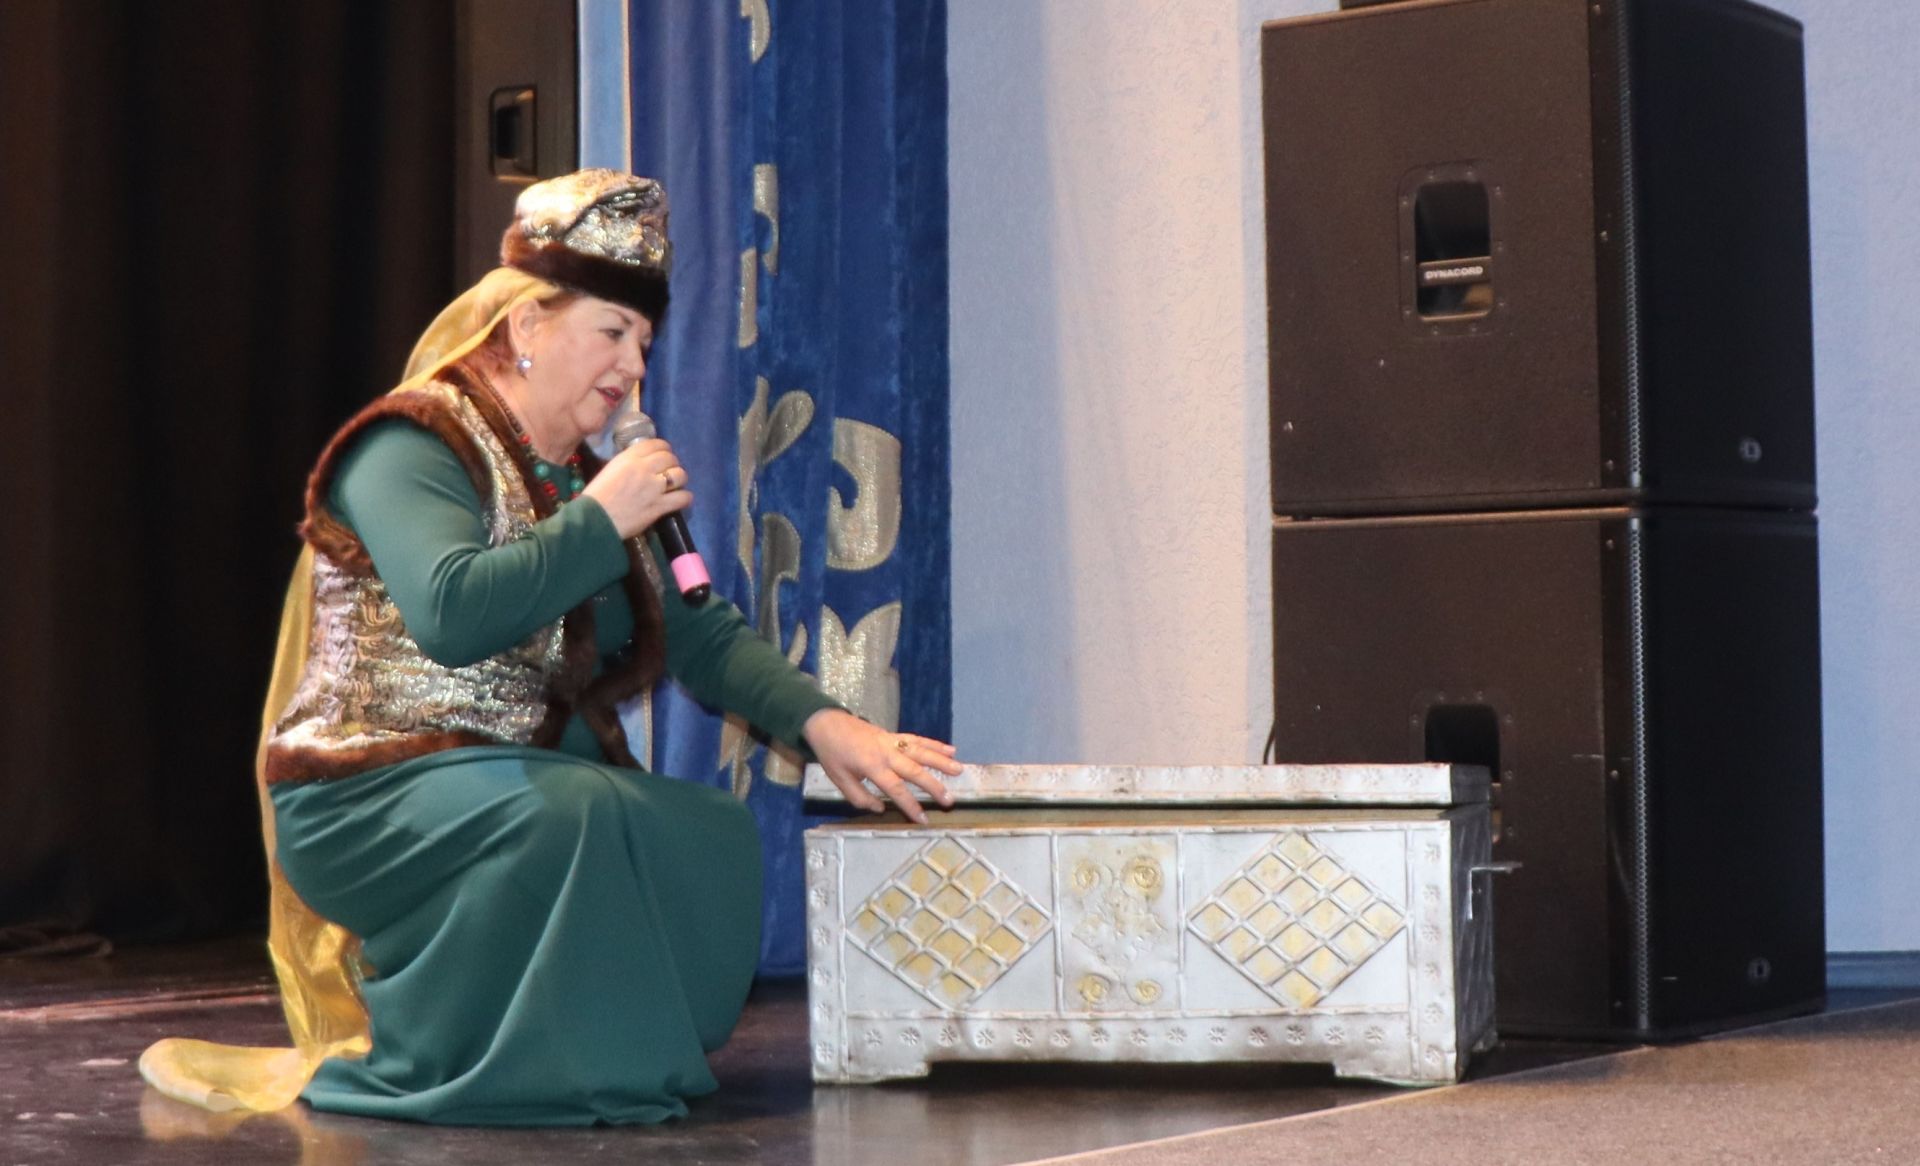 Фольклорный ансамбль из Лаишево «Алчэчэк» выступил с программой «Бабушкин сундук»